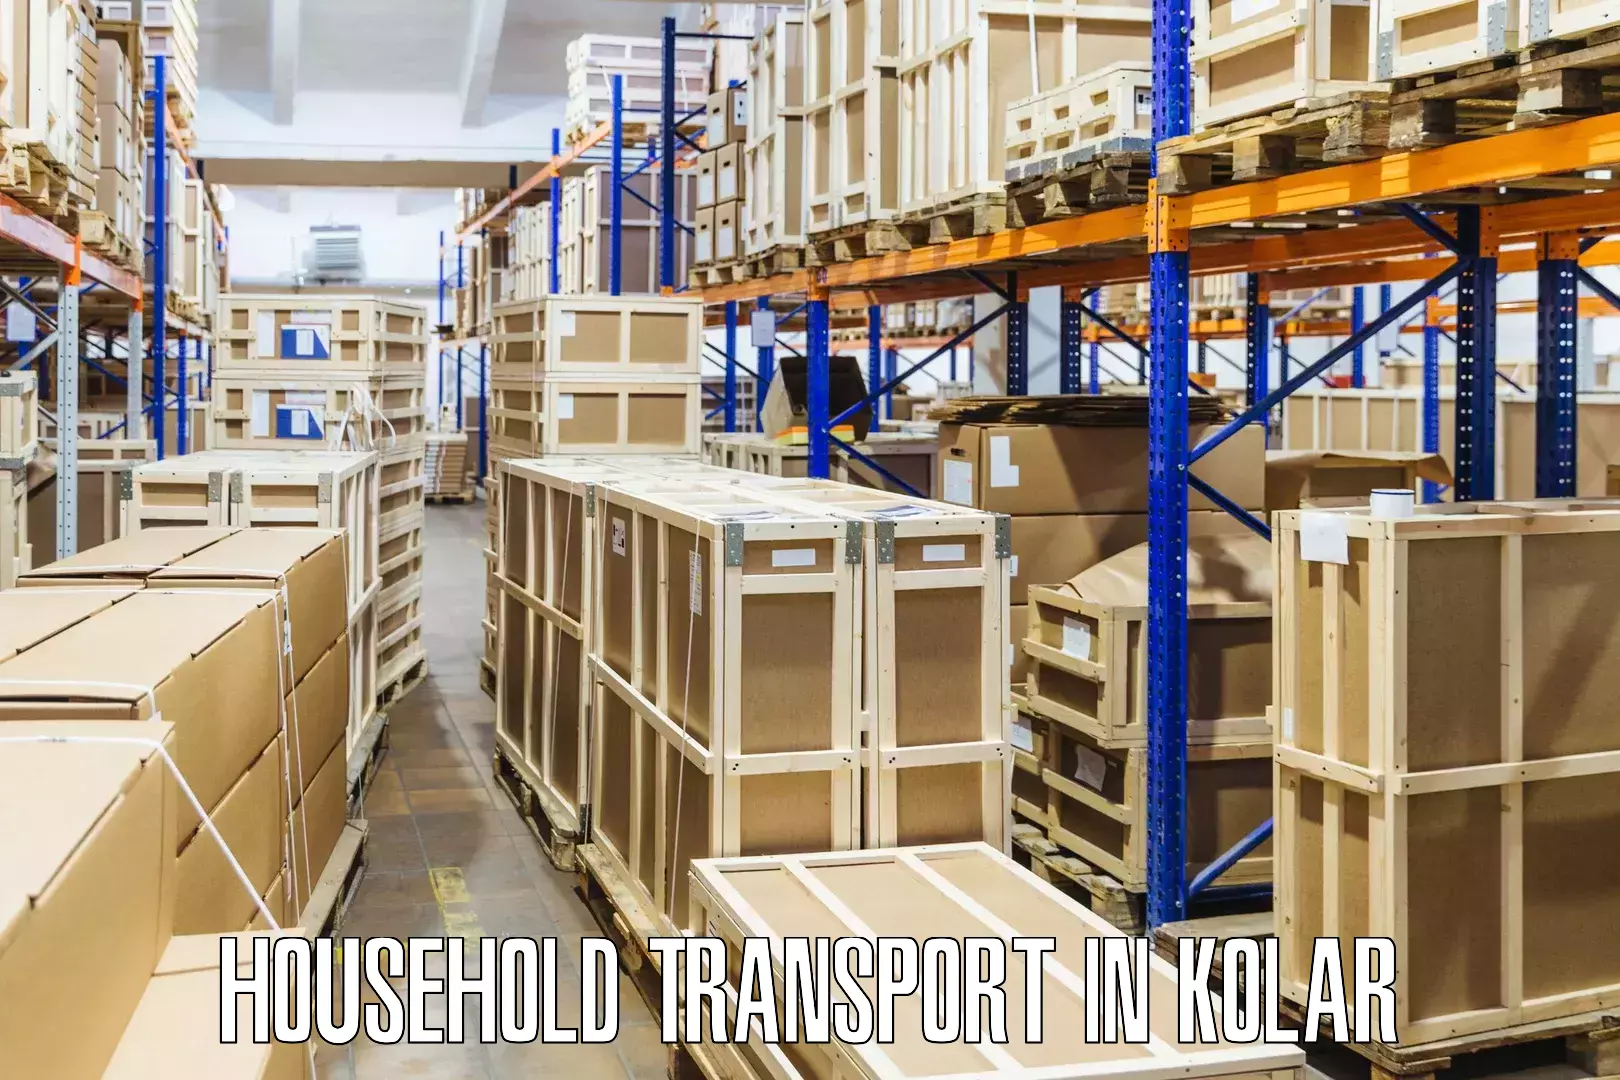 Household goods transporters in Kolar